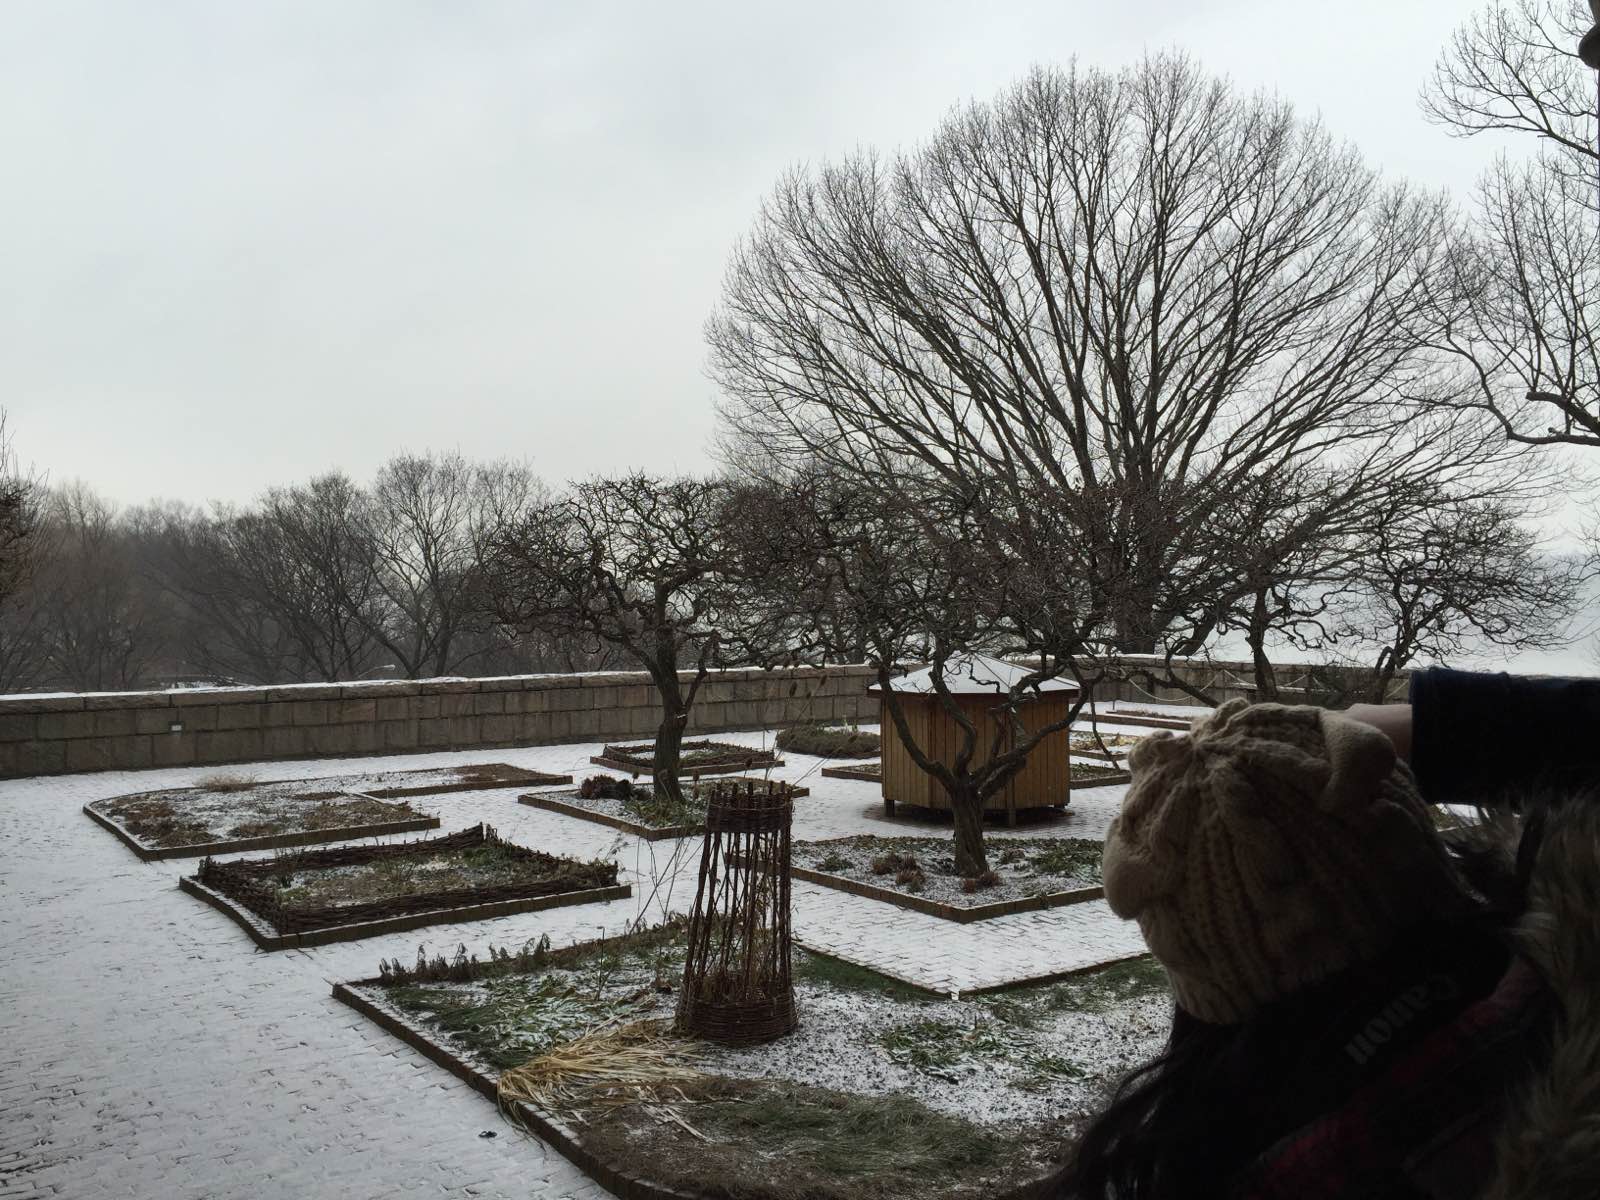 去的时候下雪了铺雪的修道院好像瞬间回到中世纪想象着静心修行的僧侣们一边